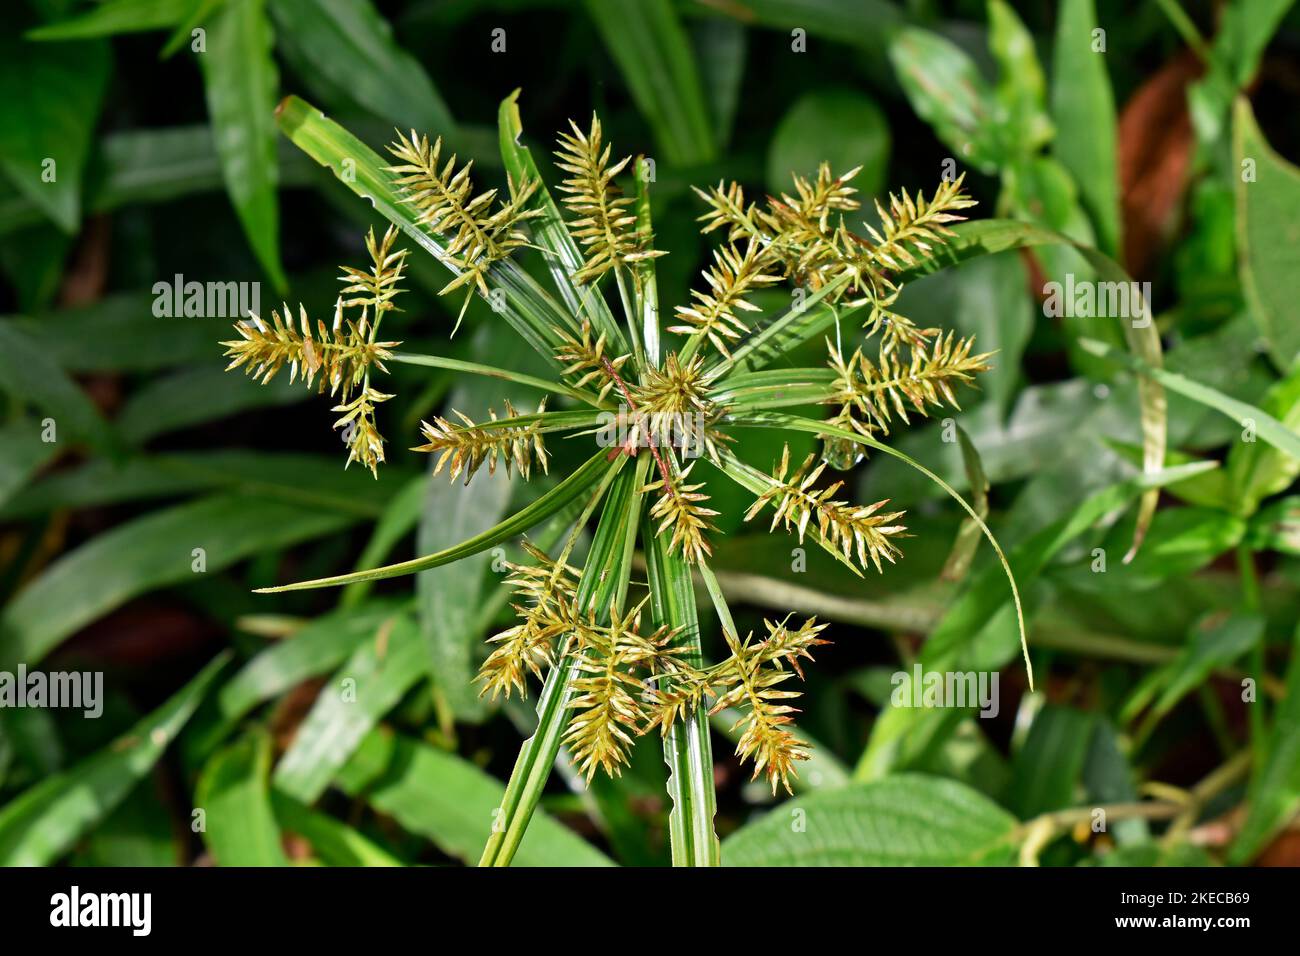 Umbrella papyrus or umbrella sedge flowers (Cyperus alternifolius) Stock Photo